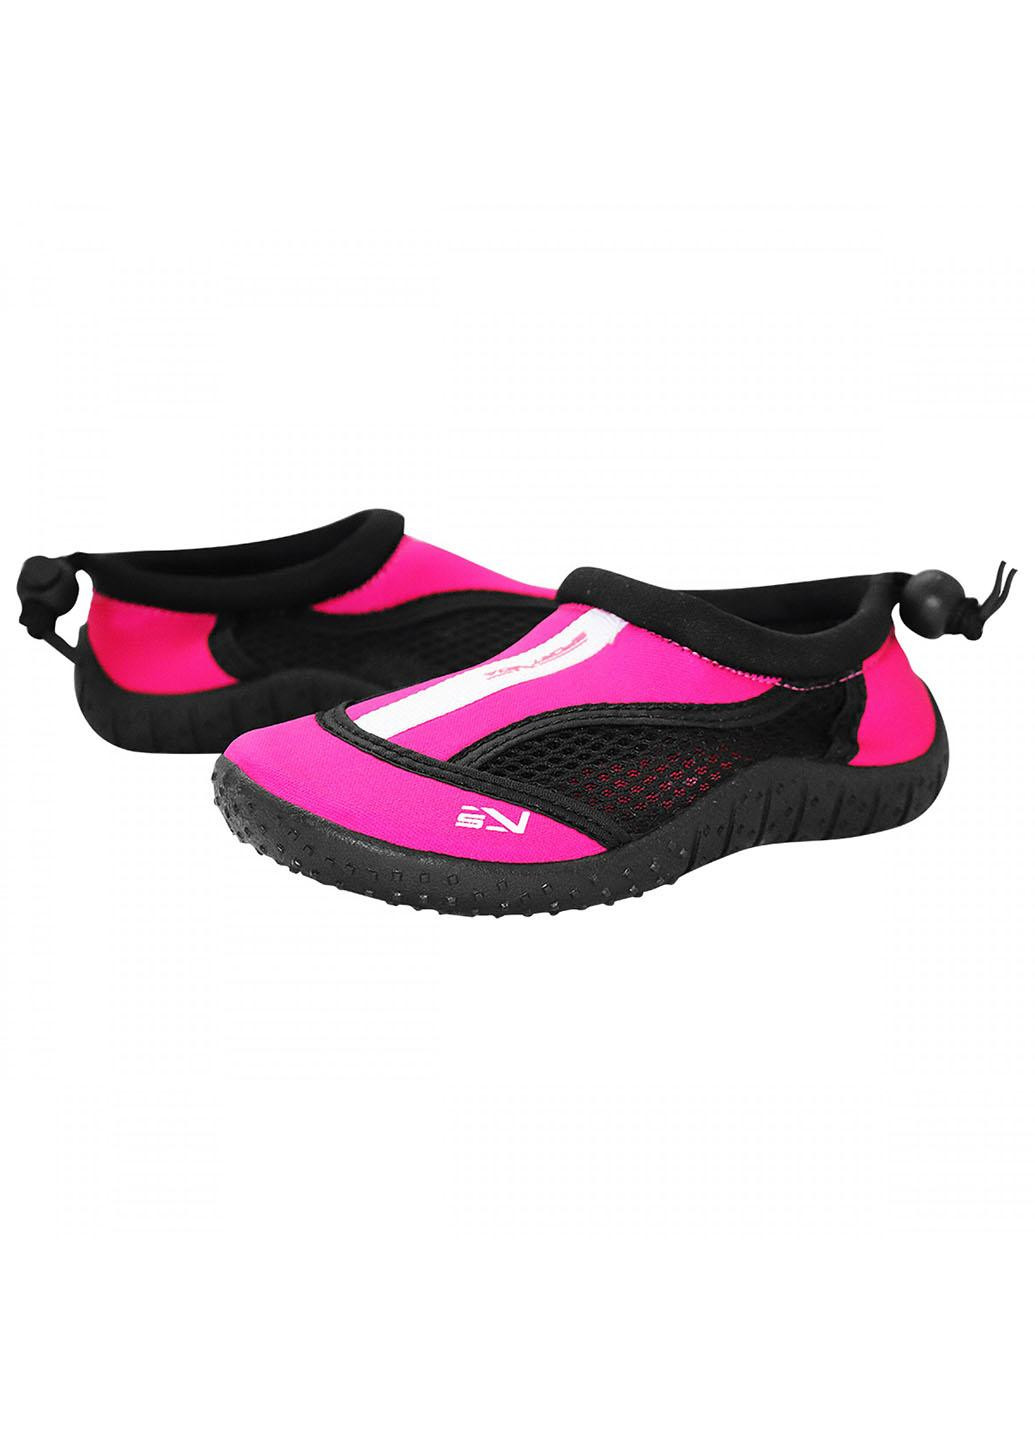 Обувь для пляжа и кораллов (аквашузы) SV-GY0001-R33 Size 33 Black/Pink SportVida (258486774)